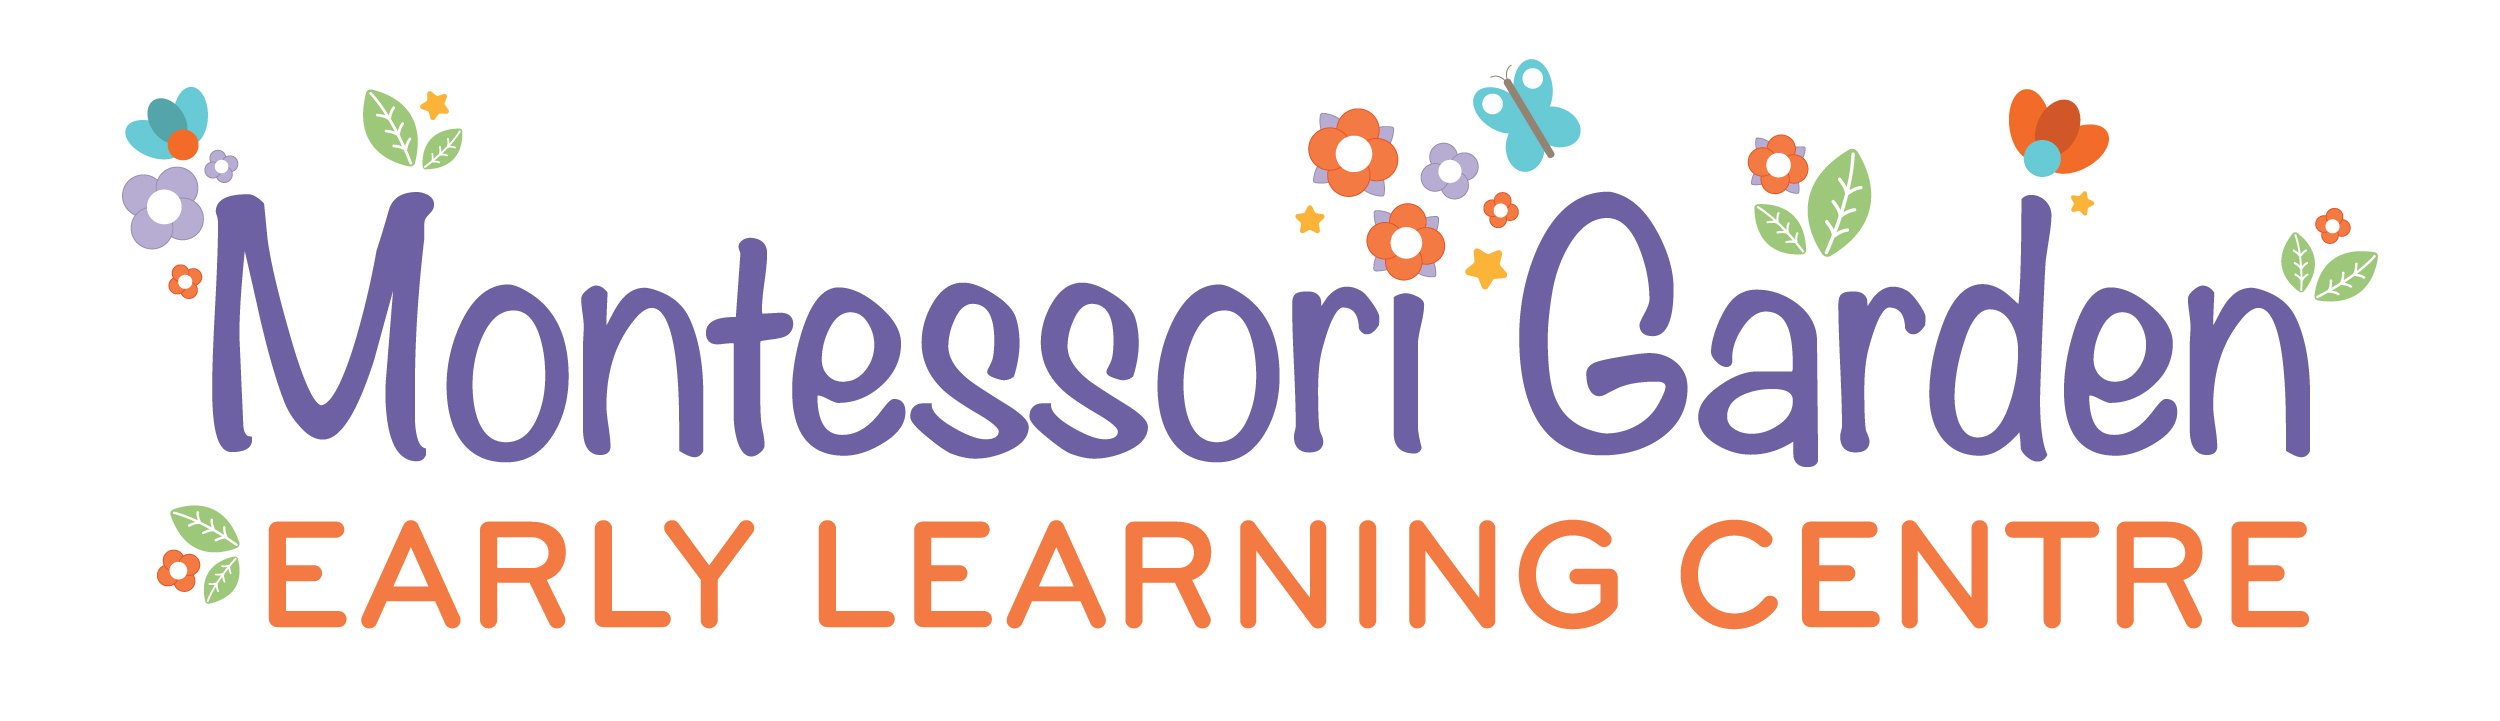 Montessori Garden Child Care and Kindergarten